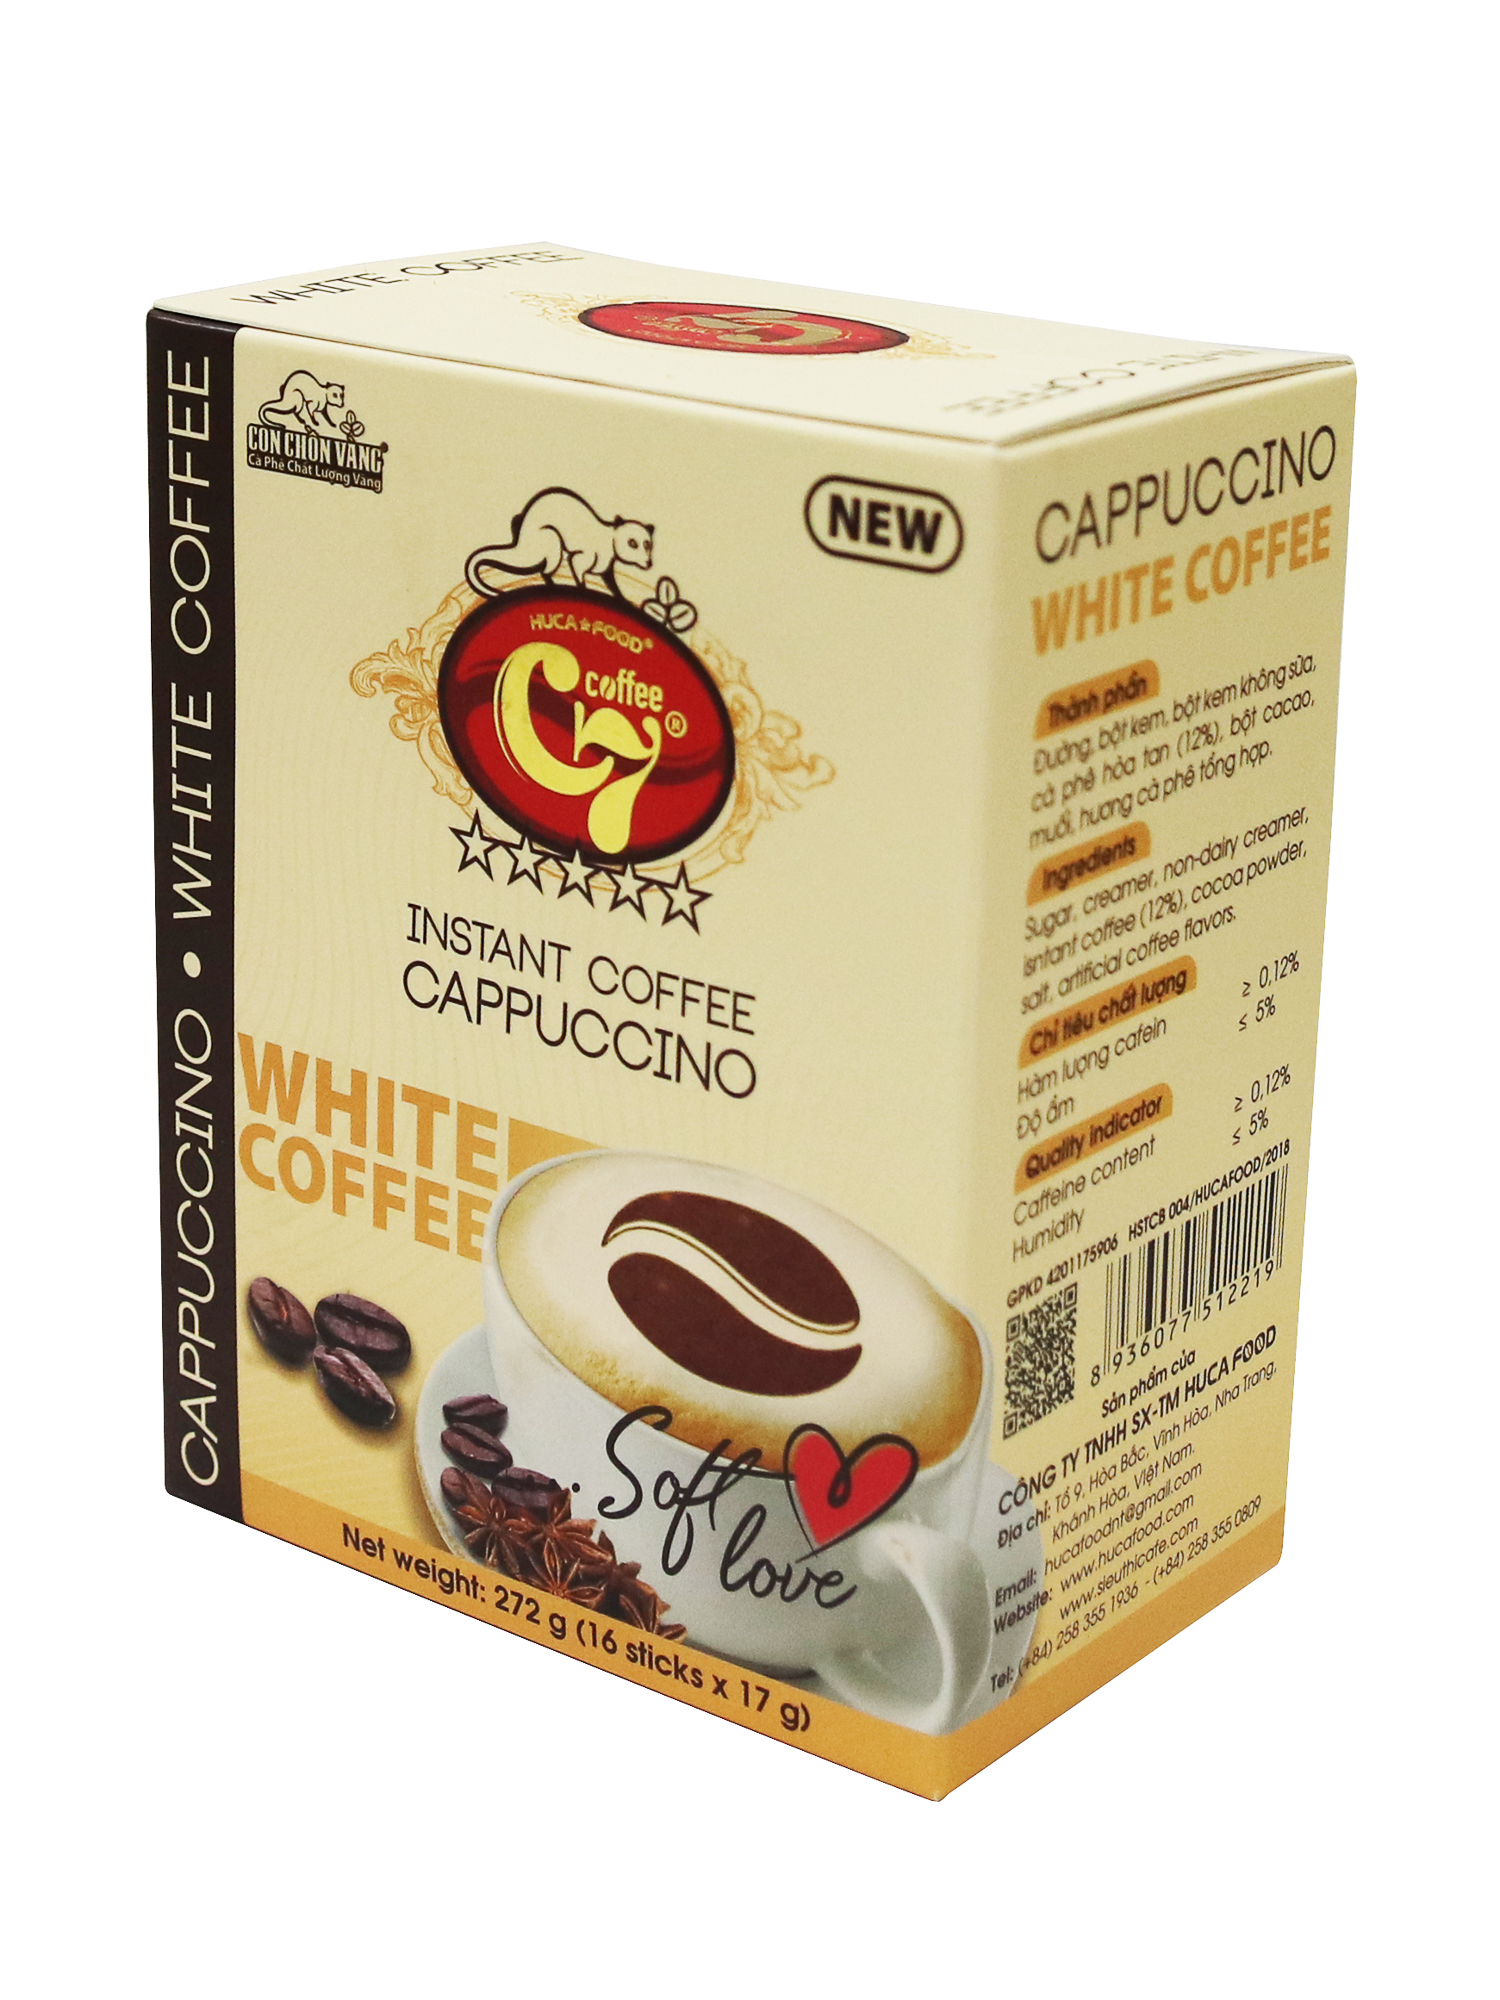 Cà Phê Hòa Tan Cappuccino White Coffee Hiệu Con Chồn Vàng C7 - Hộp 272Gr (16 Gói x 17Gr)